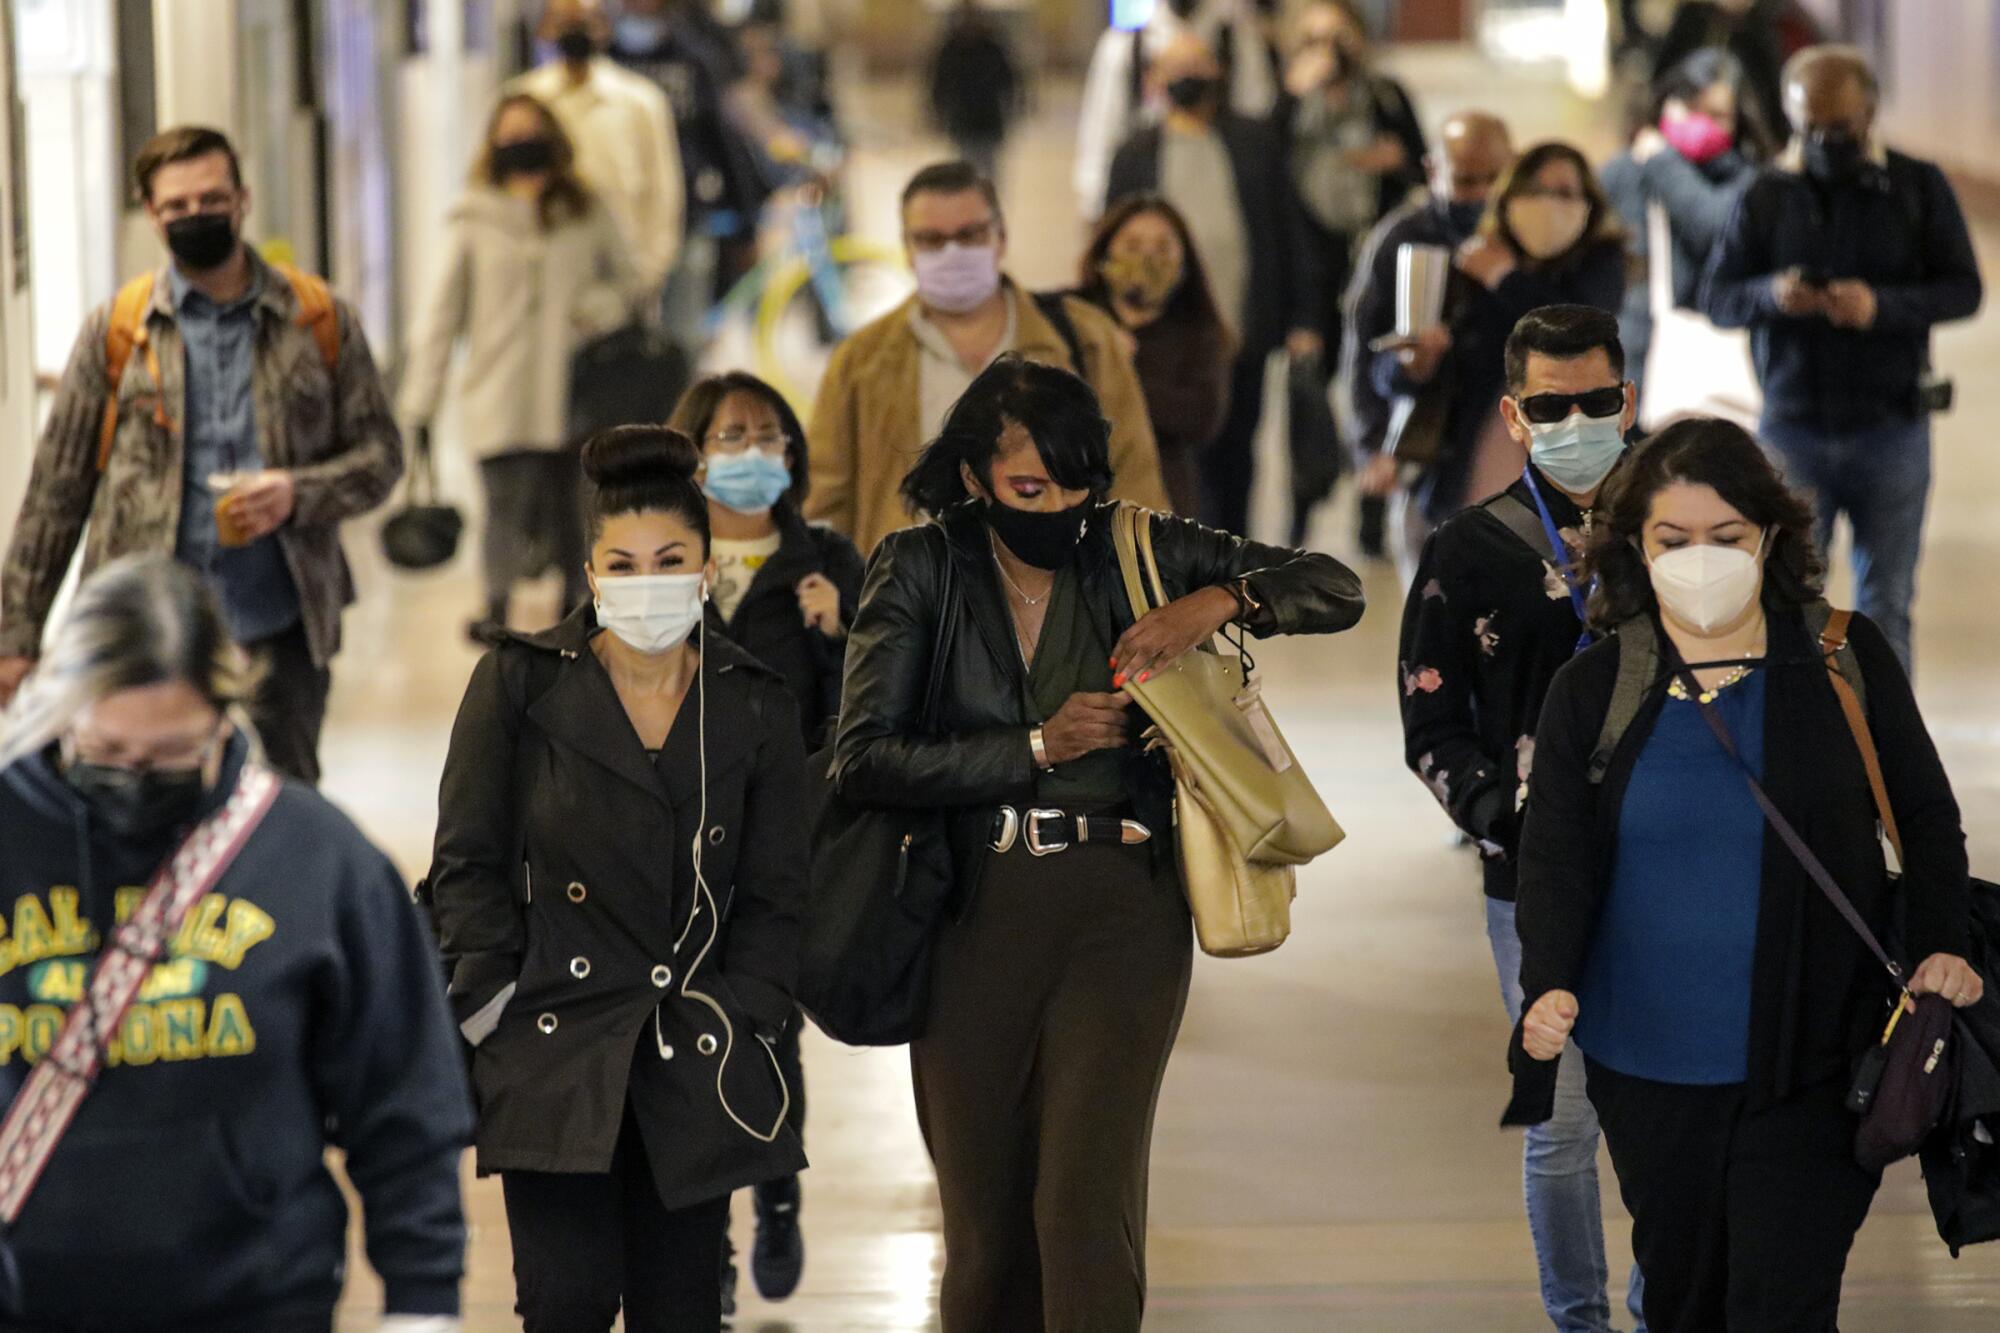 People wearing masks walk through a subway station